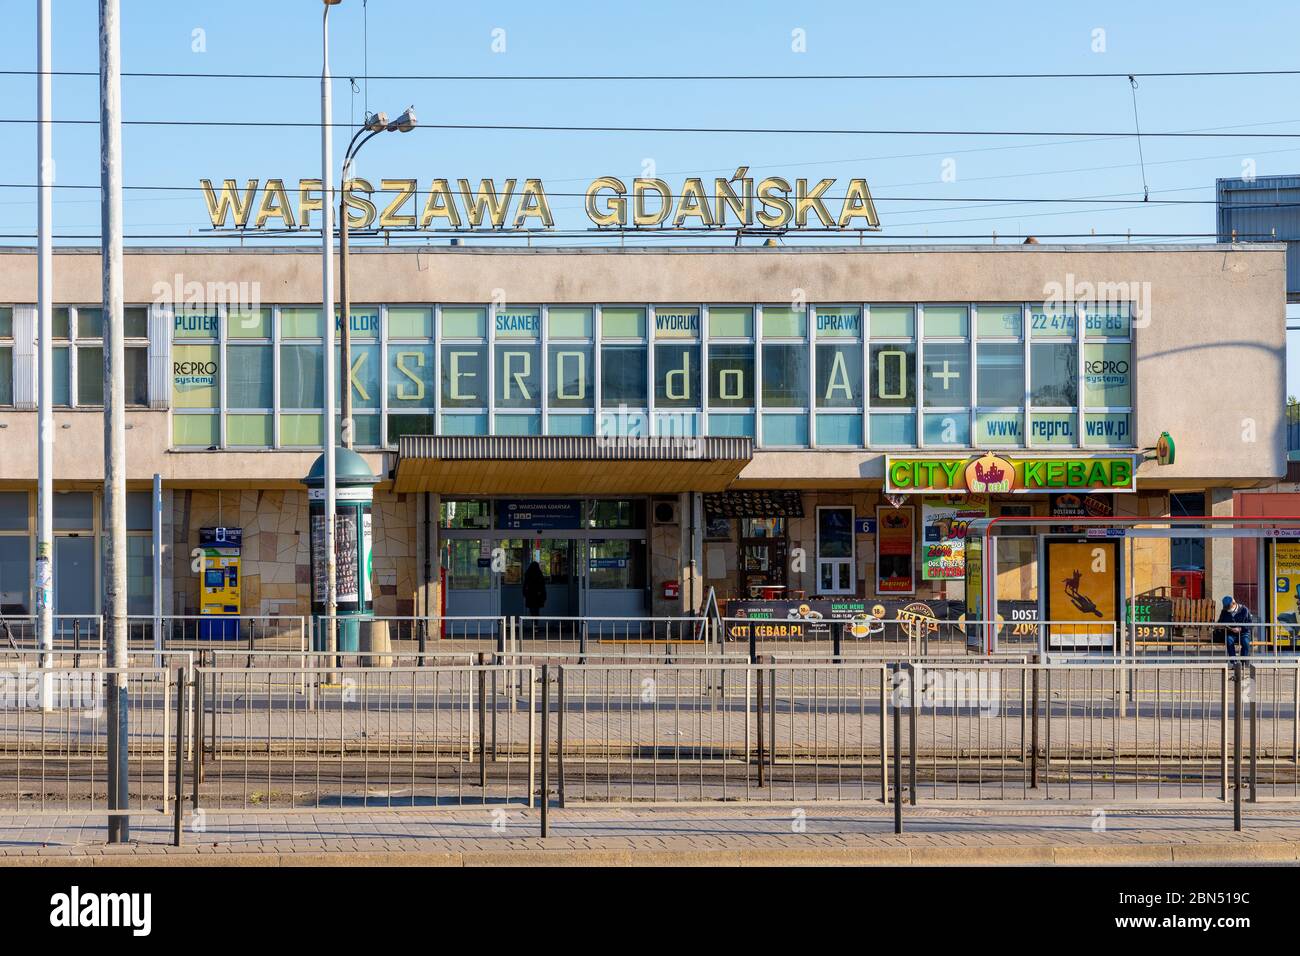 Warsaw, Mazovia / Poland - 2020/05/10: Warszawa Gdanska railway station building at Slonimskiego street in Zoliborz northern district of Warsaw Stock Photo